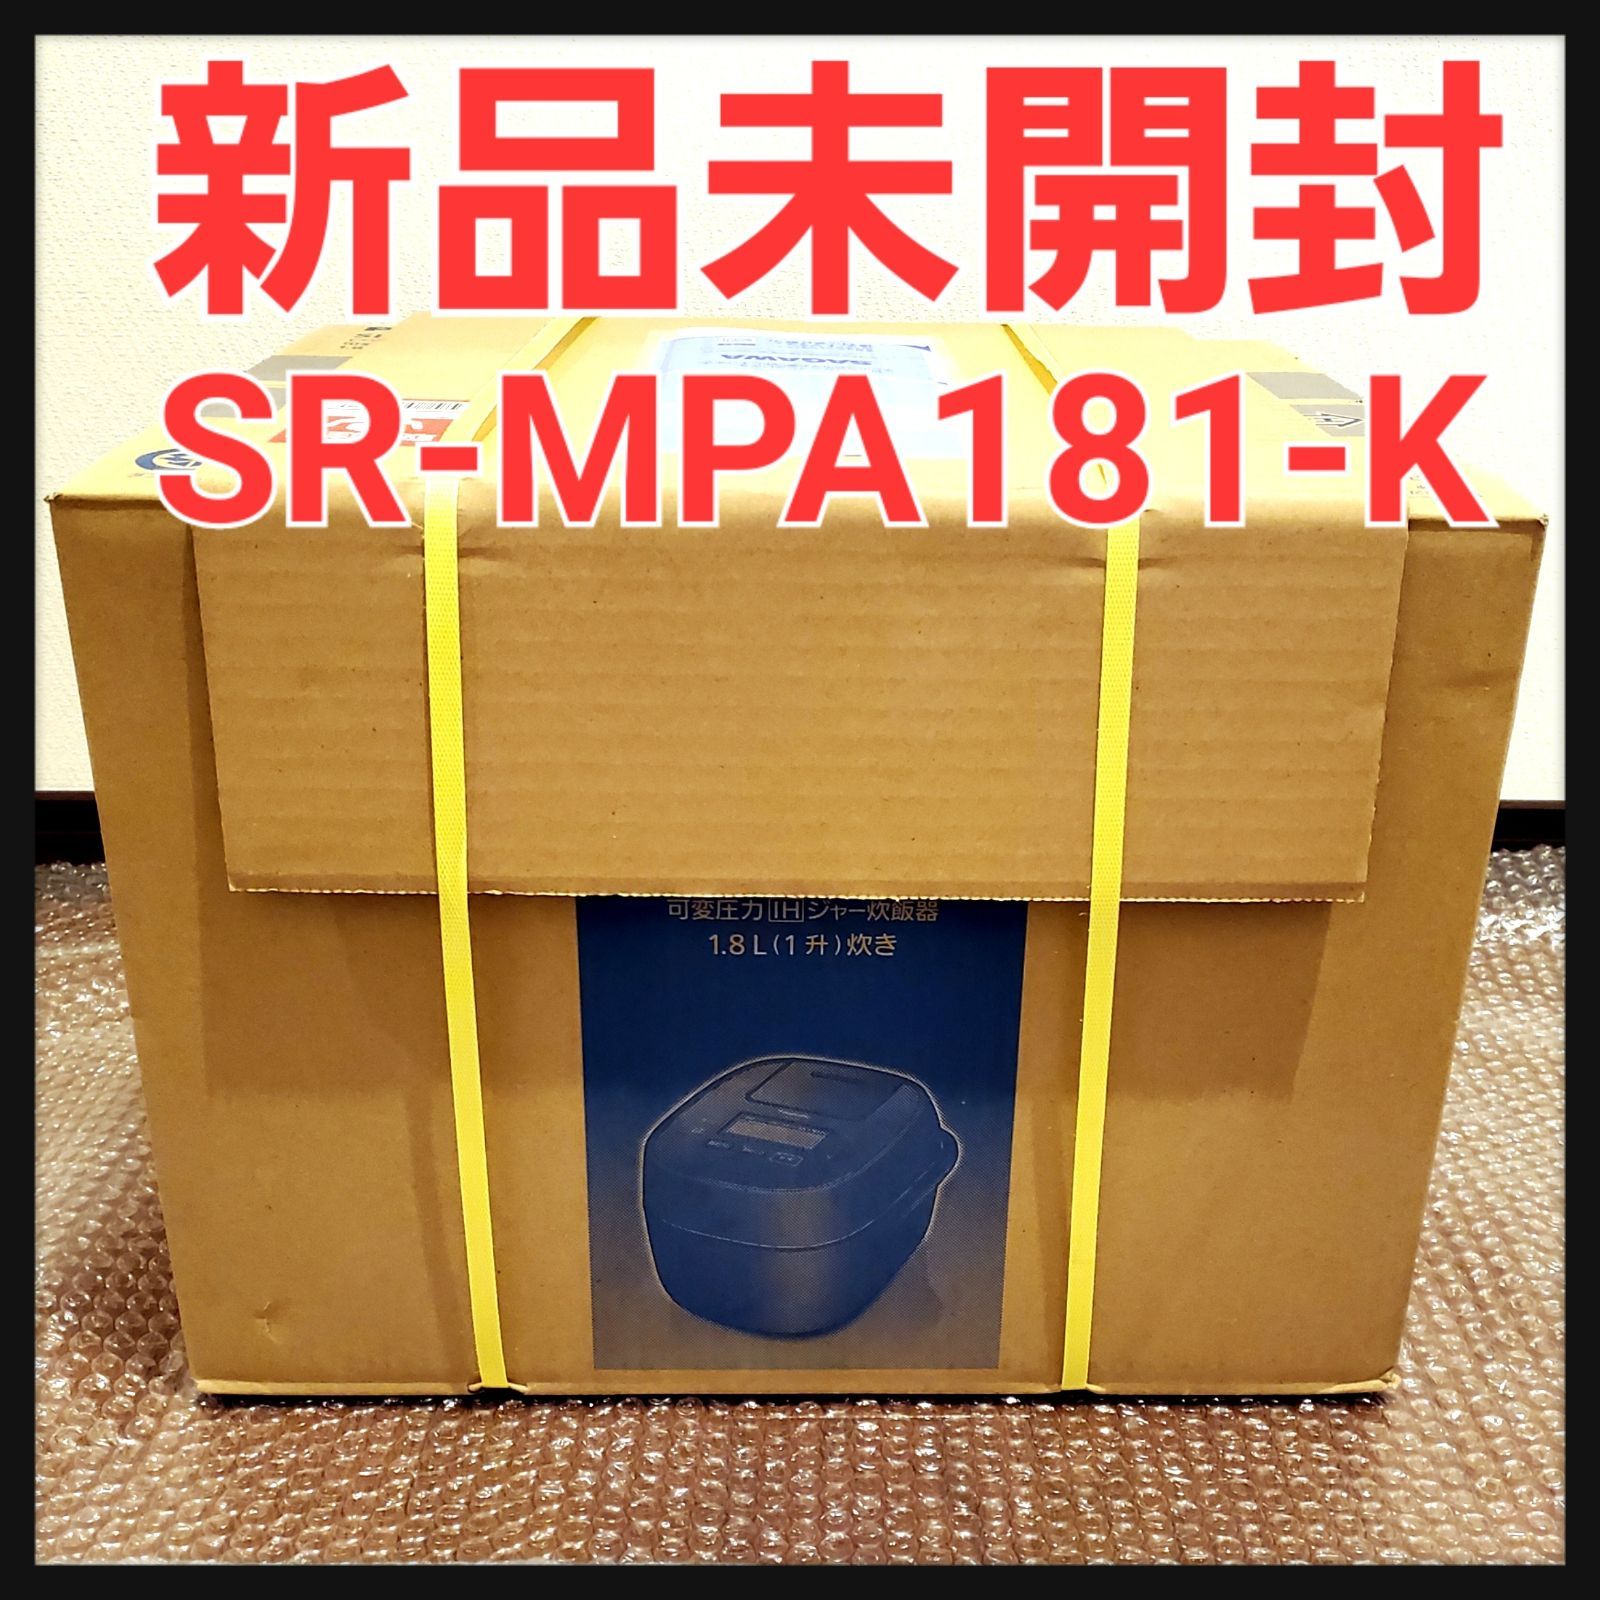 新品未開封】Panasonic 炊飯器 SR-MPA181-K ブラック | www